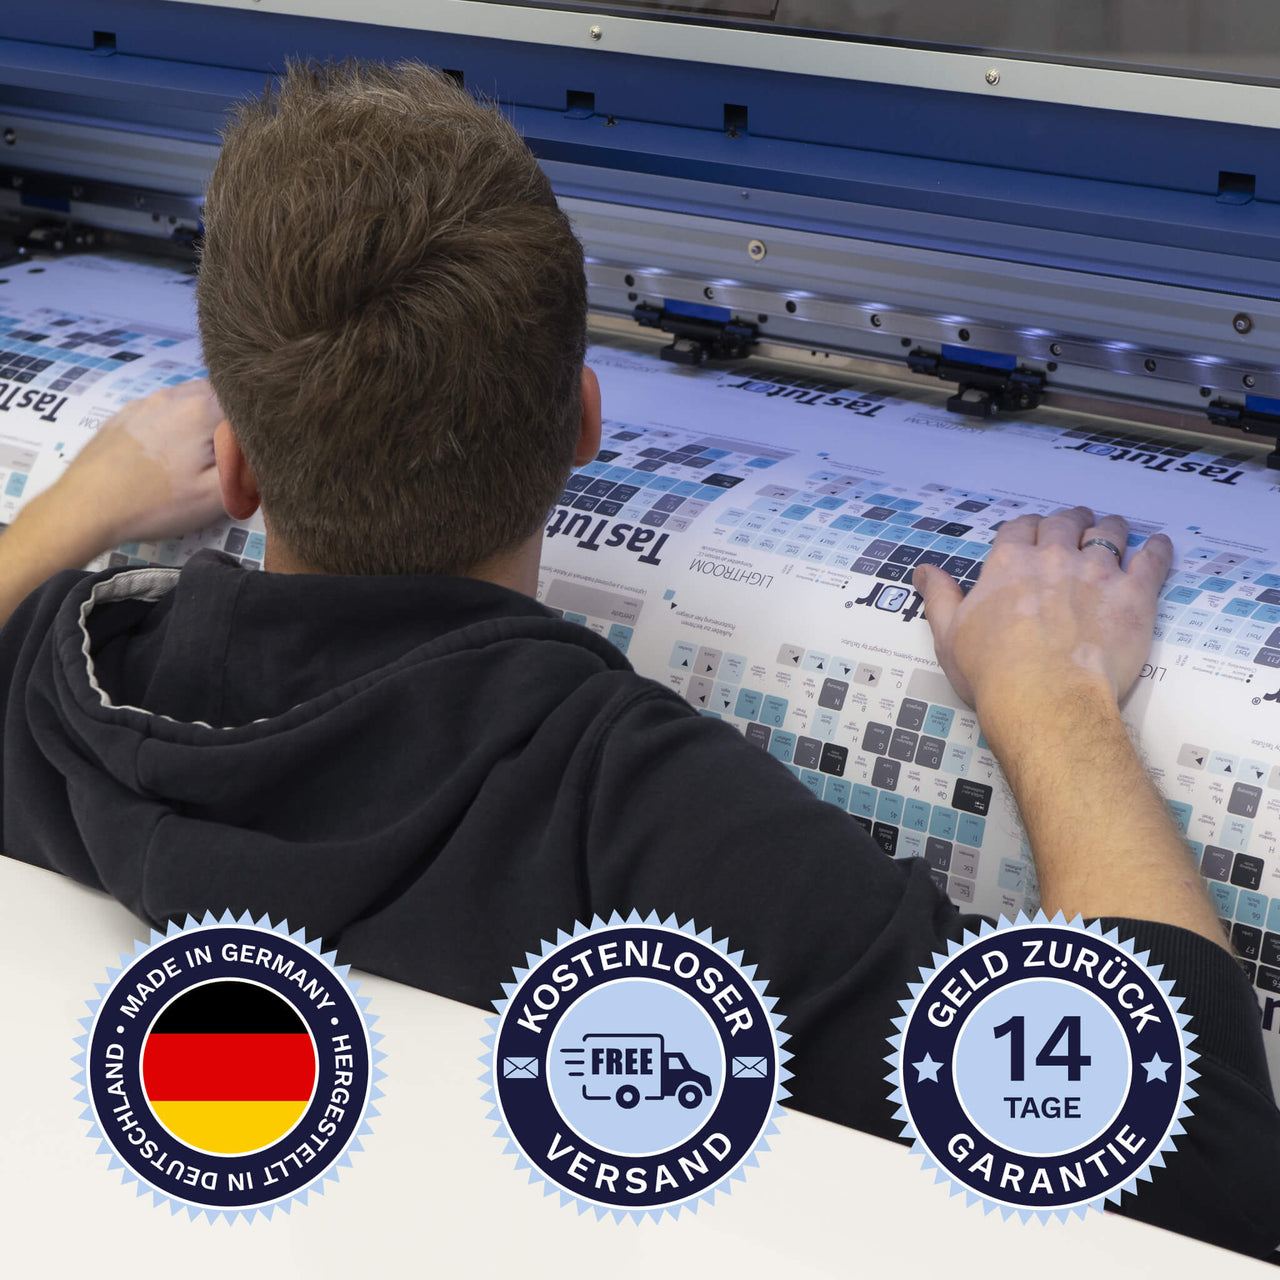 Ableton Live Tastaturaufkleber werden in Deutschland hergestellt. Der Versand ist kostenlos und wir gewährleisten 14 Tage Geld zurück Garantie | TasTutor